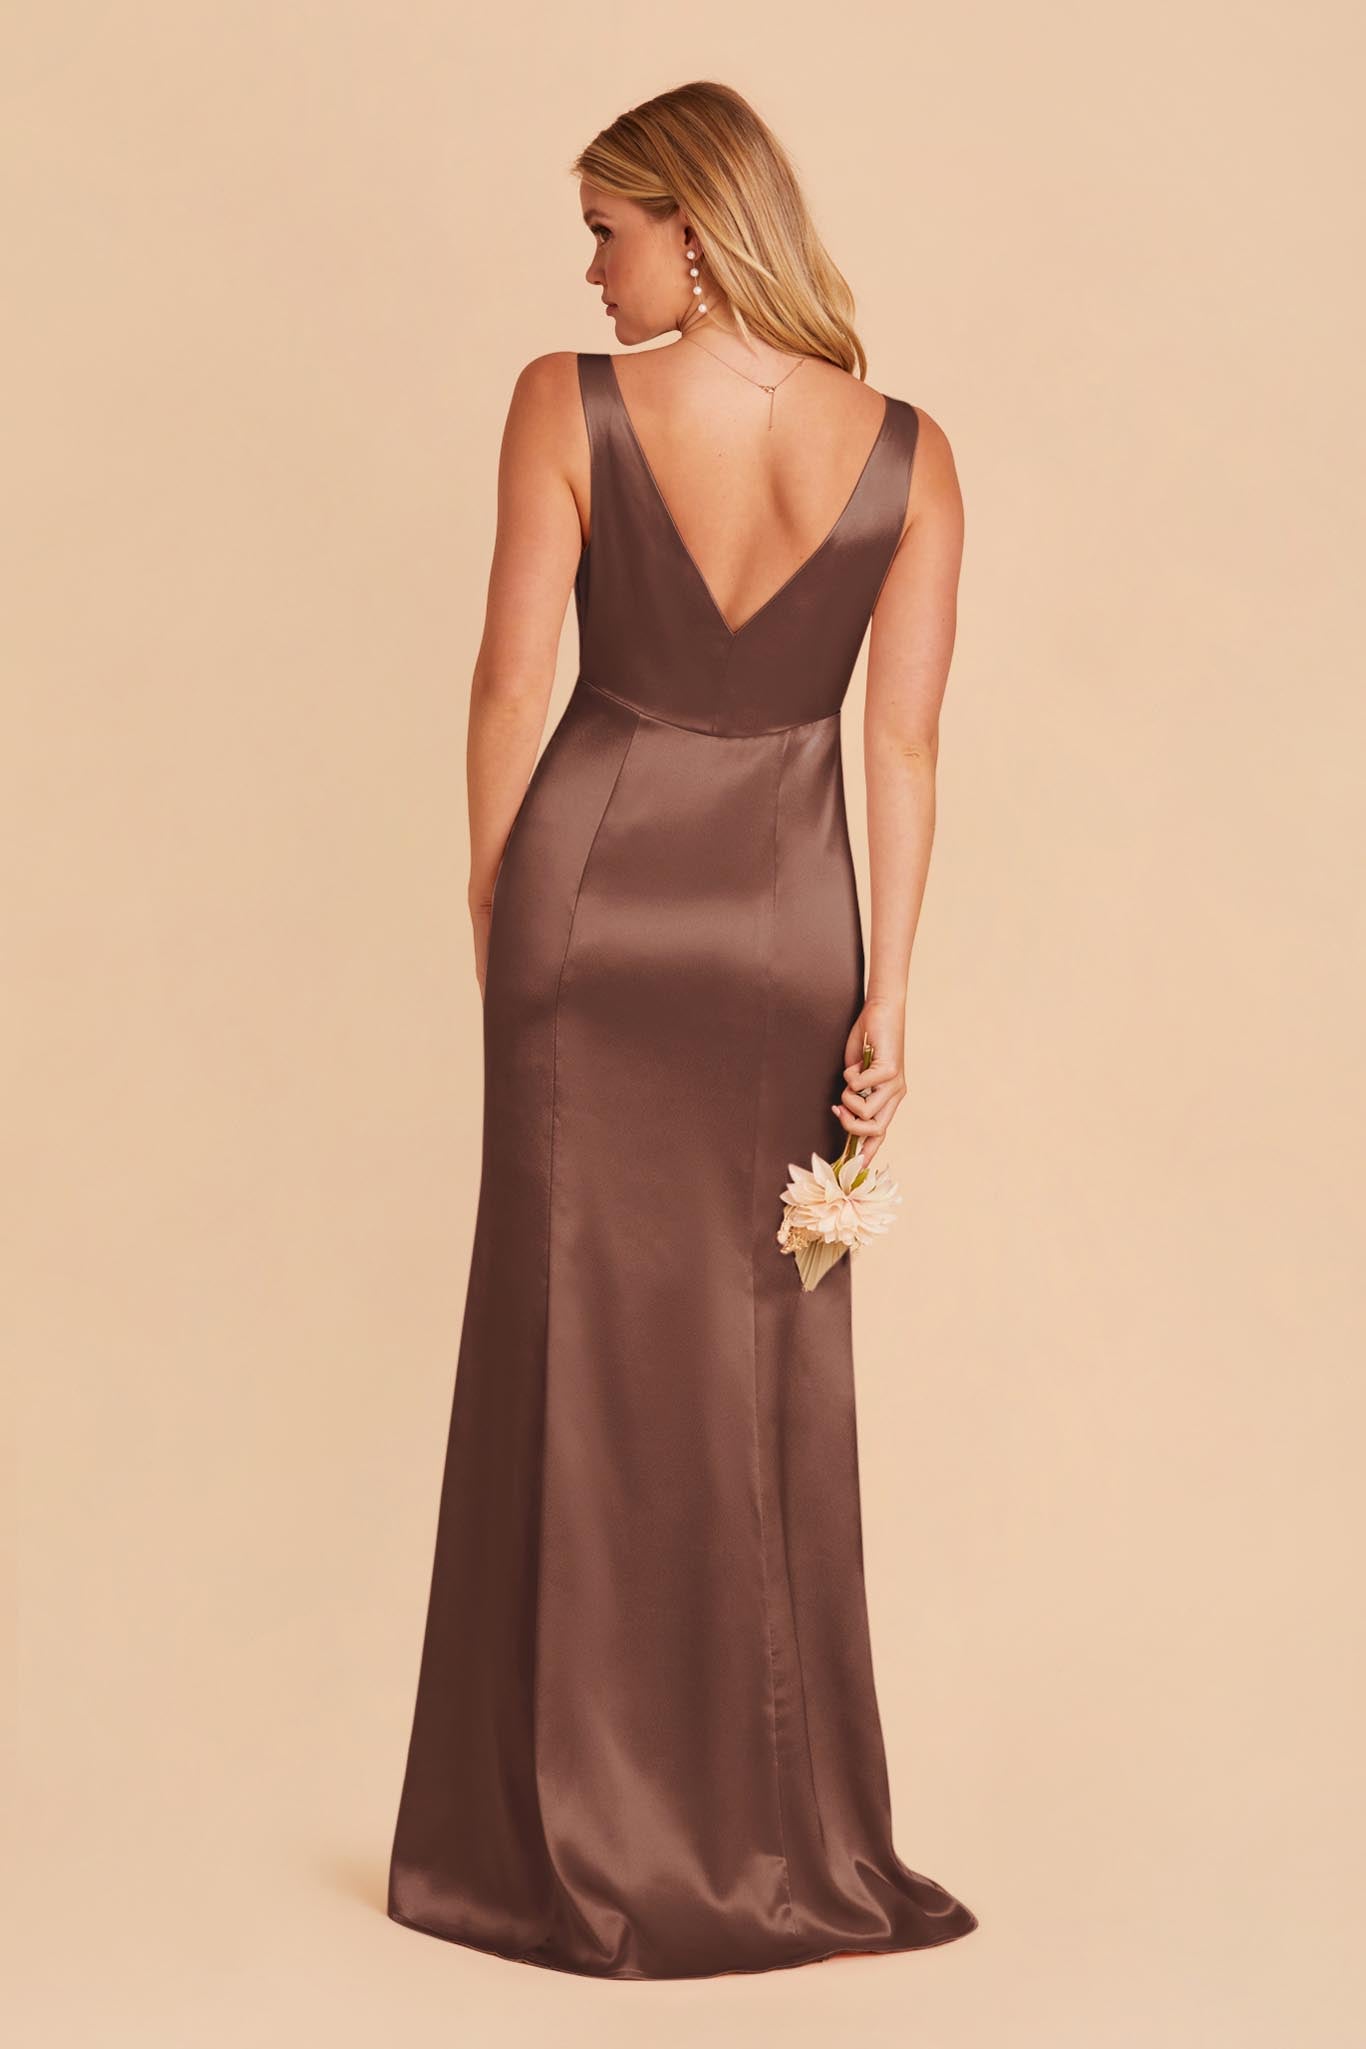 Chocolate Brown Gloria Satin Dress by Birdy Grey